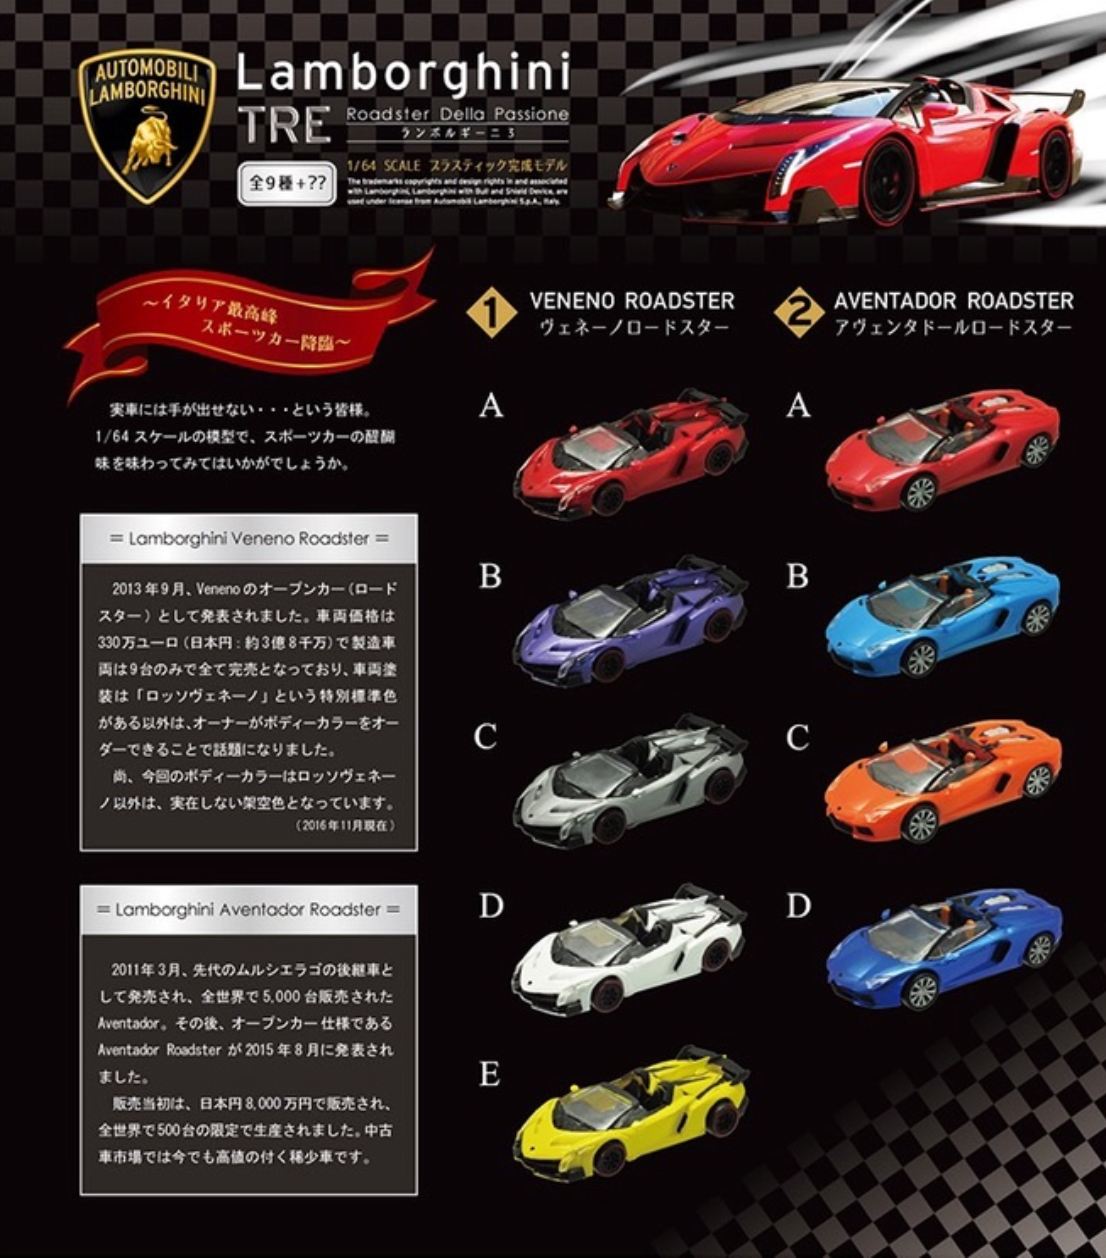 F-toys 1/64 Automobili Lamborghini Collection TRE Roadster Della Passione Car 9+2 Secret 11 Figure Set